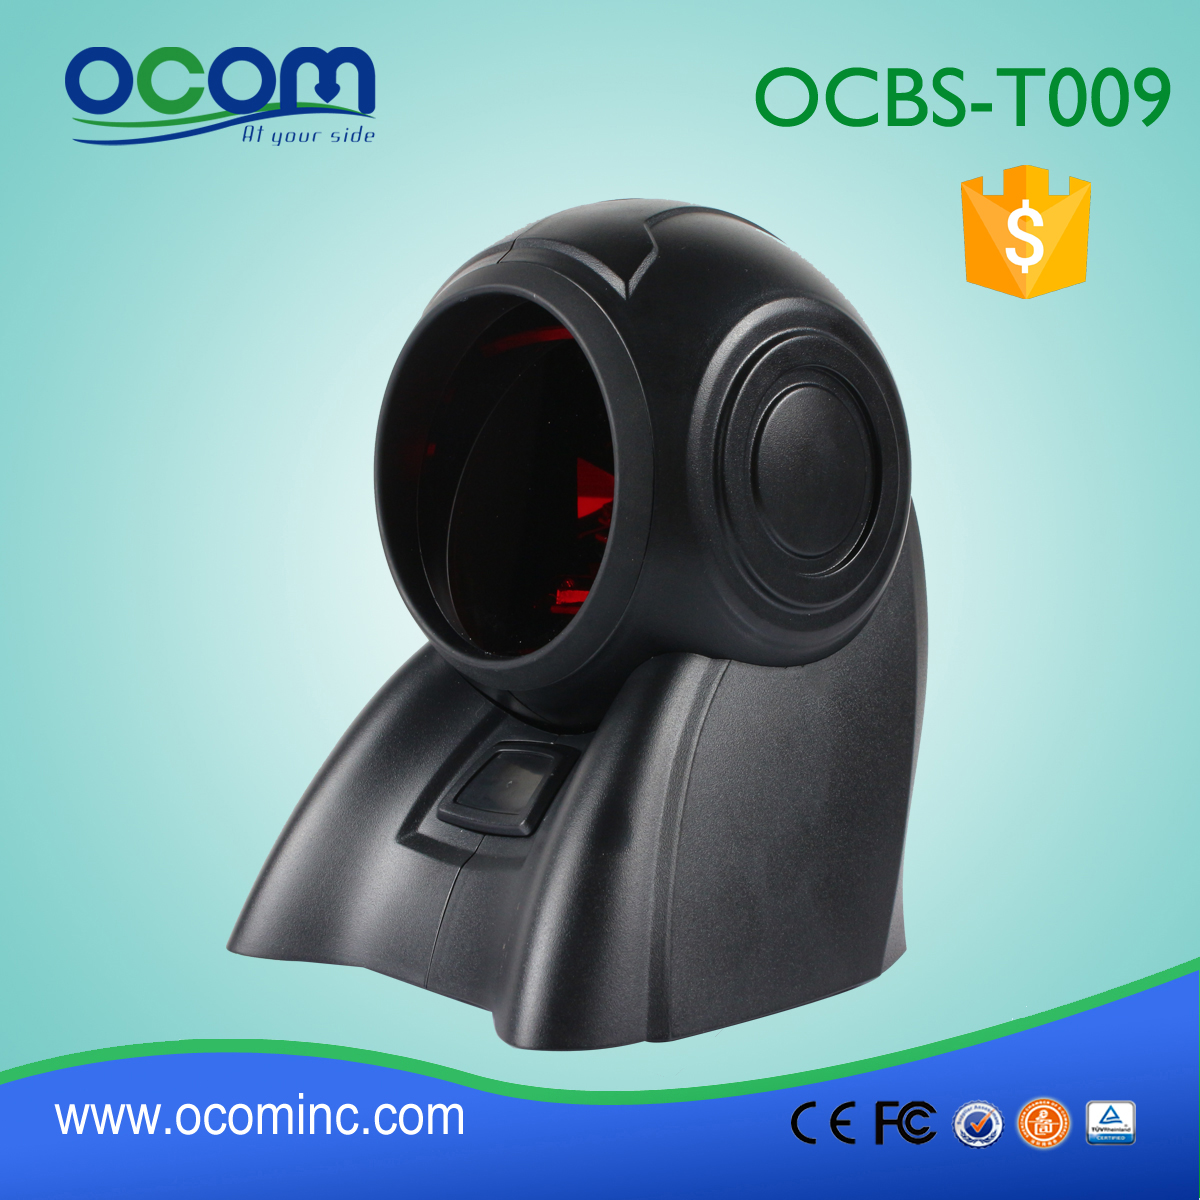 oferta quentes longa distância Omni fornecedor de código de barras scanner, leitor de código de barras